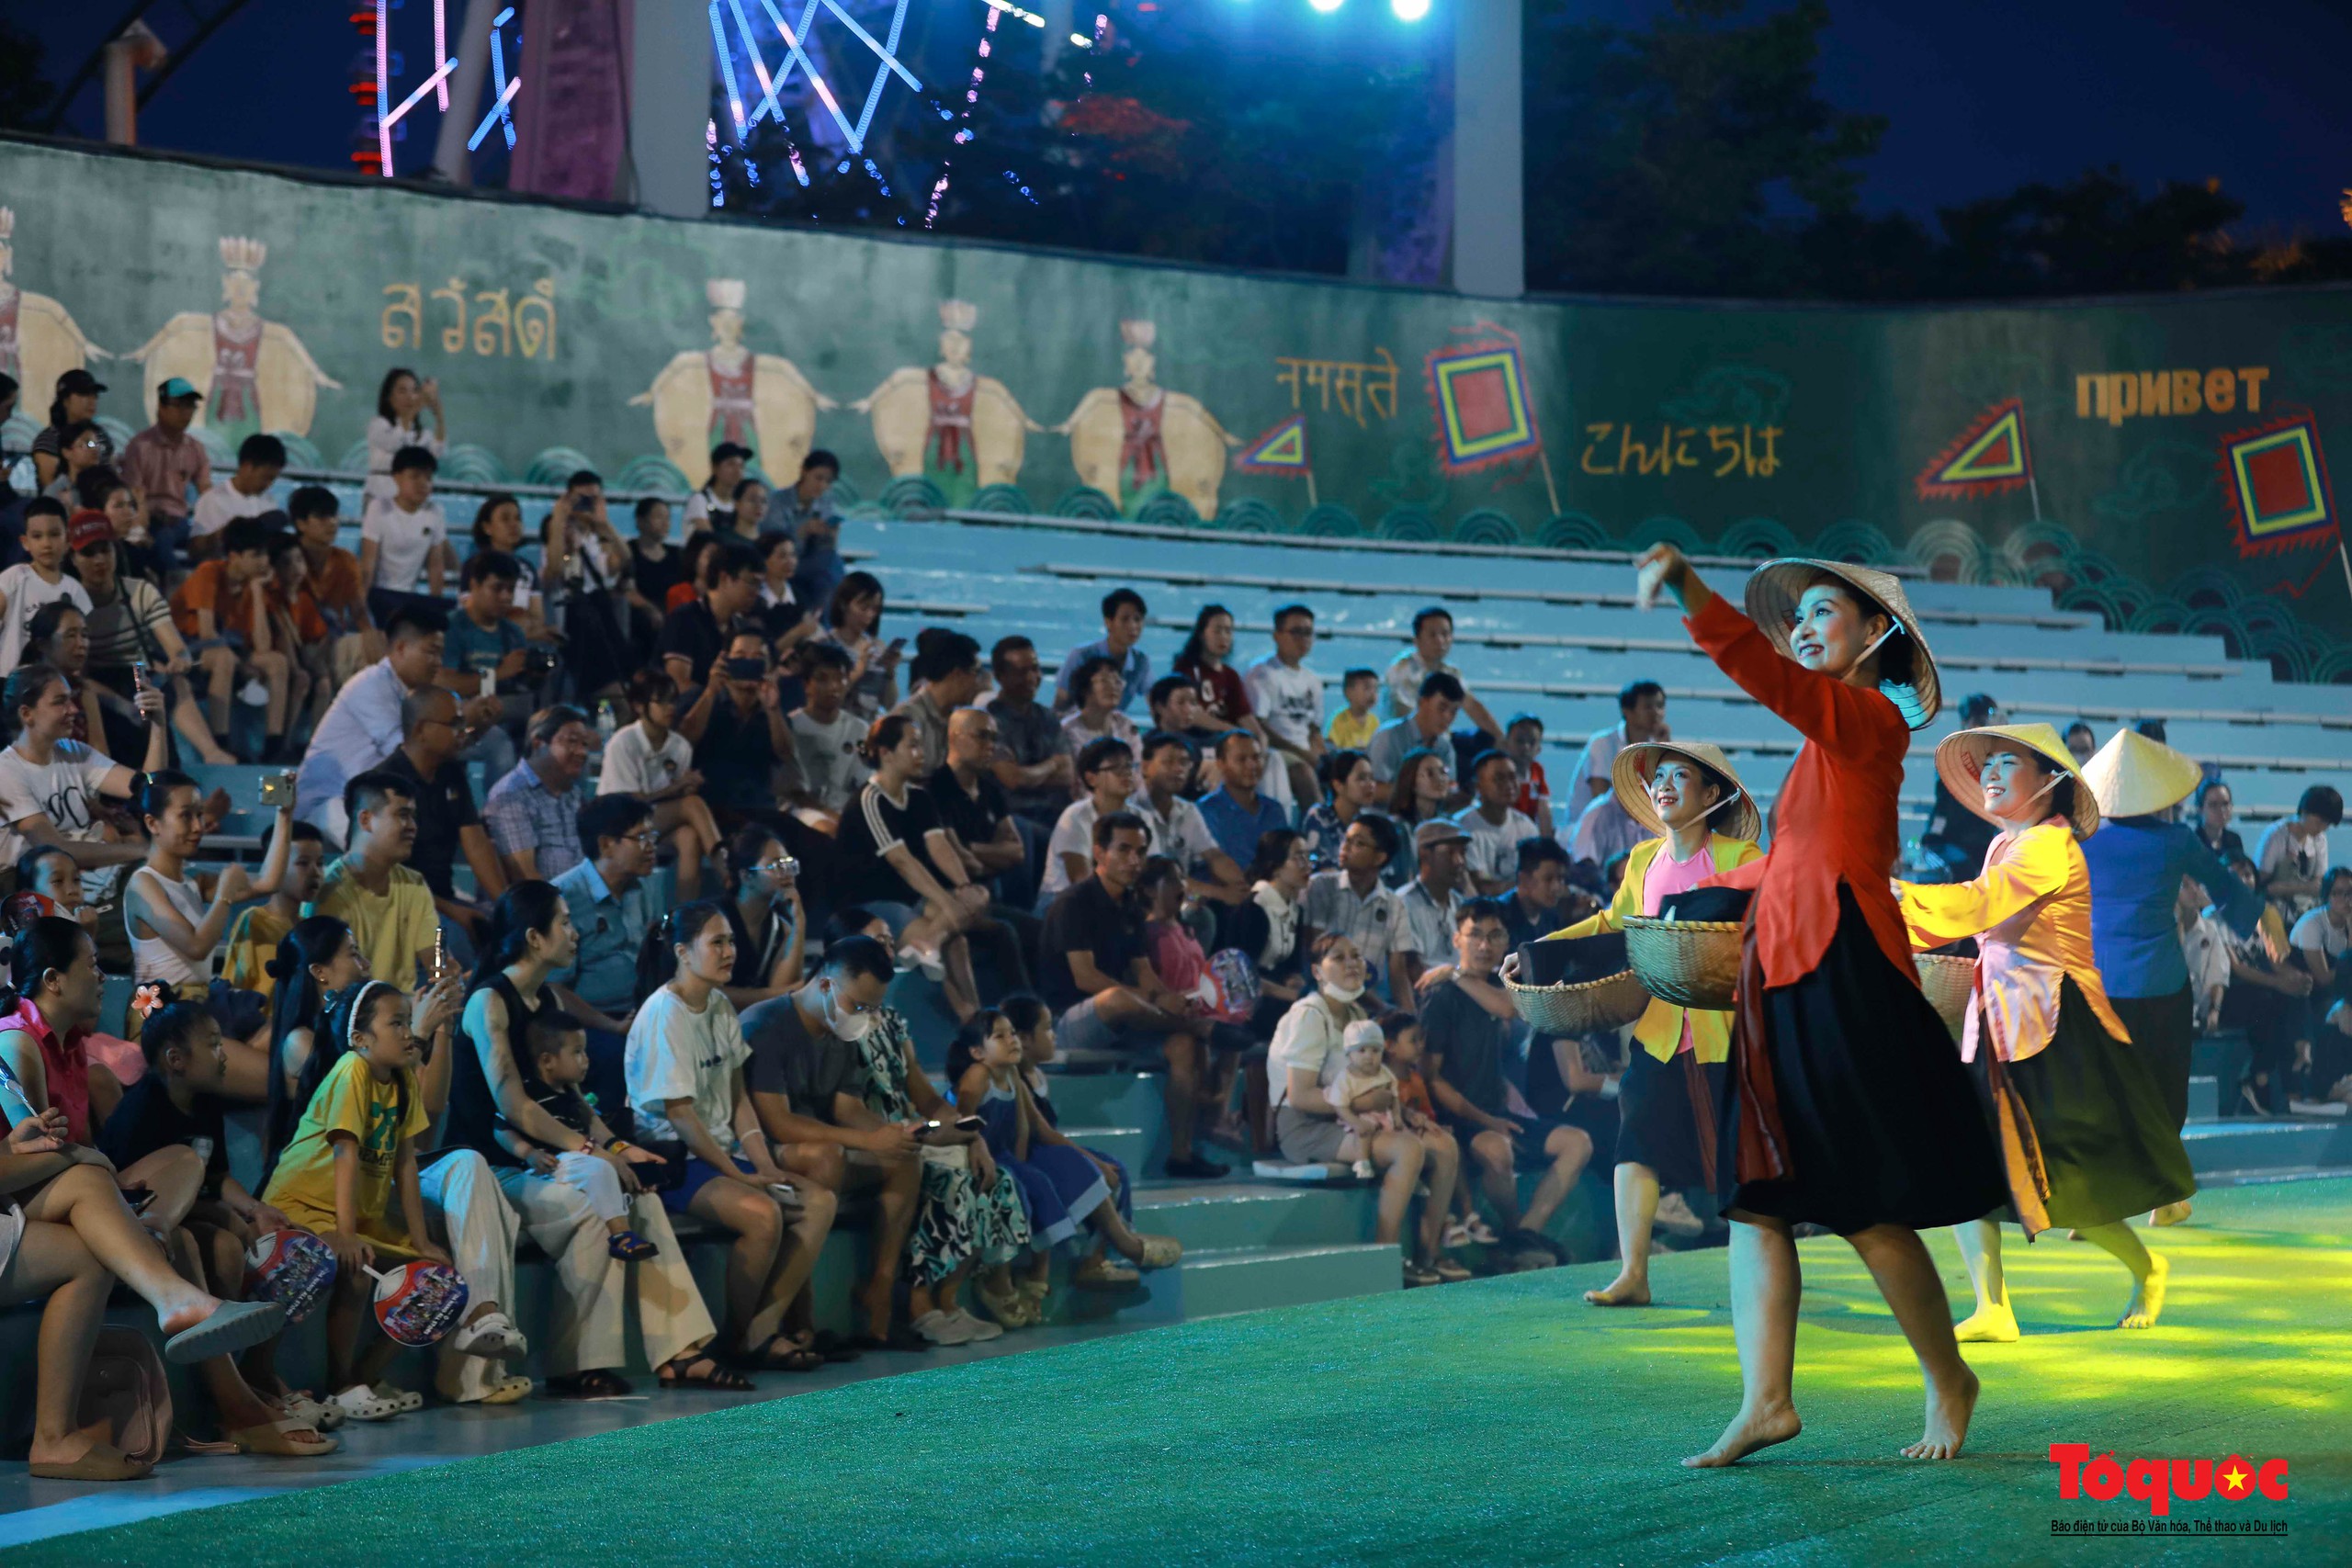 Du khách thích thú khám phá dòng chảy văn hóa Việt tại nhà hát múa rối lớn nhất miền Trung - Ảnh 12.